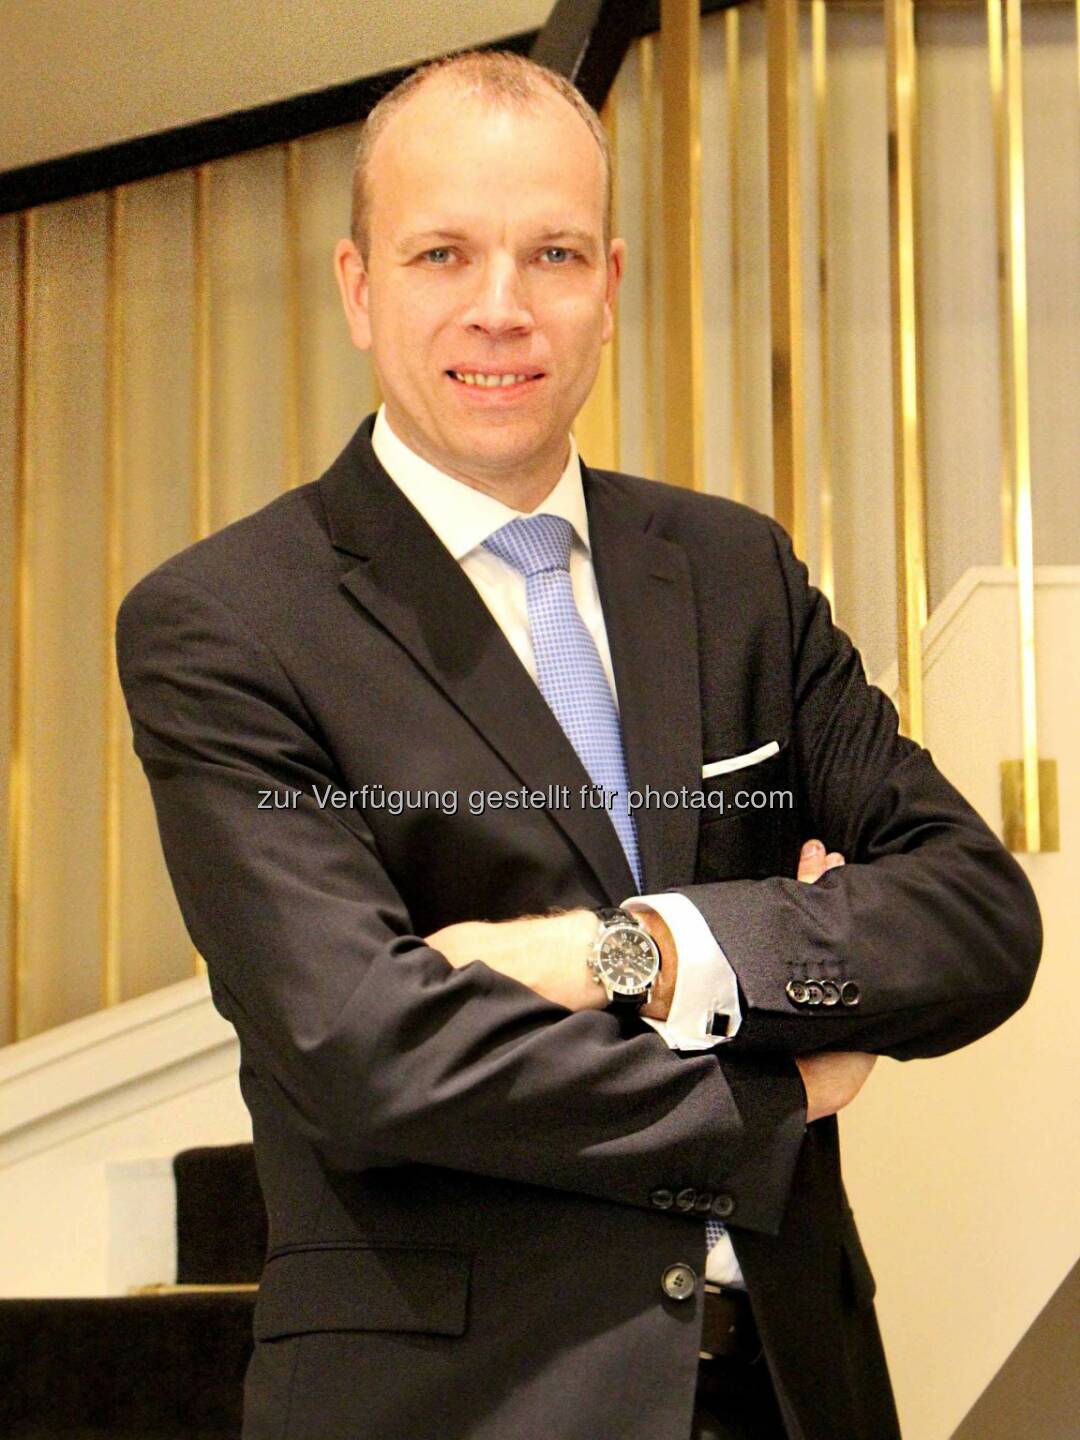 Matthias Welzel ist neuer Hotel Manager im Hilton Vienna Plaza (© Hilton Hotels & Resorts)
